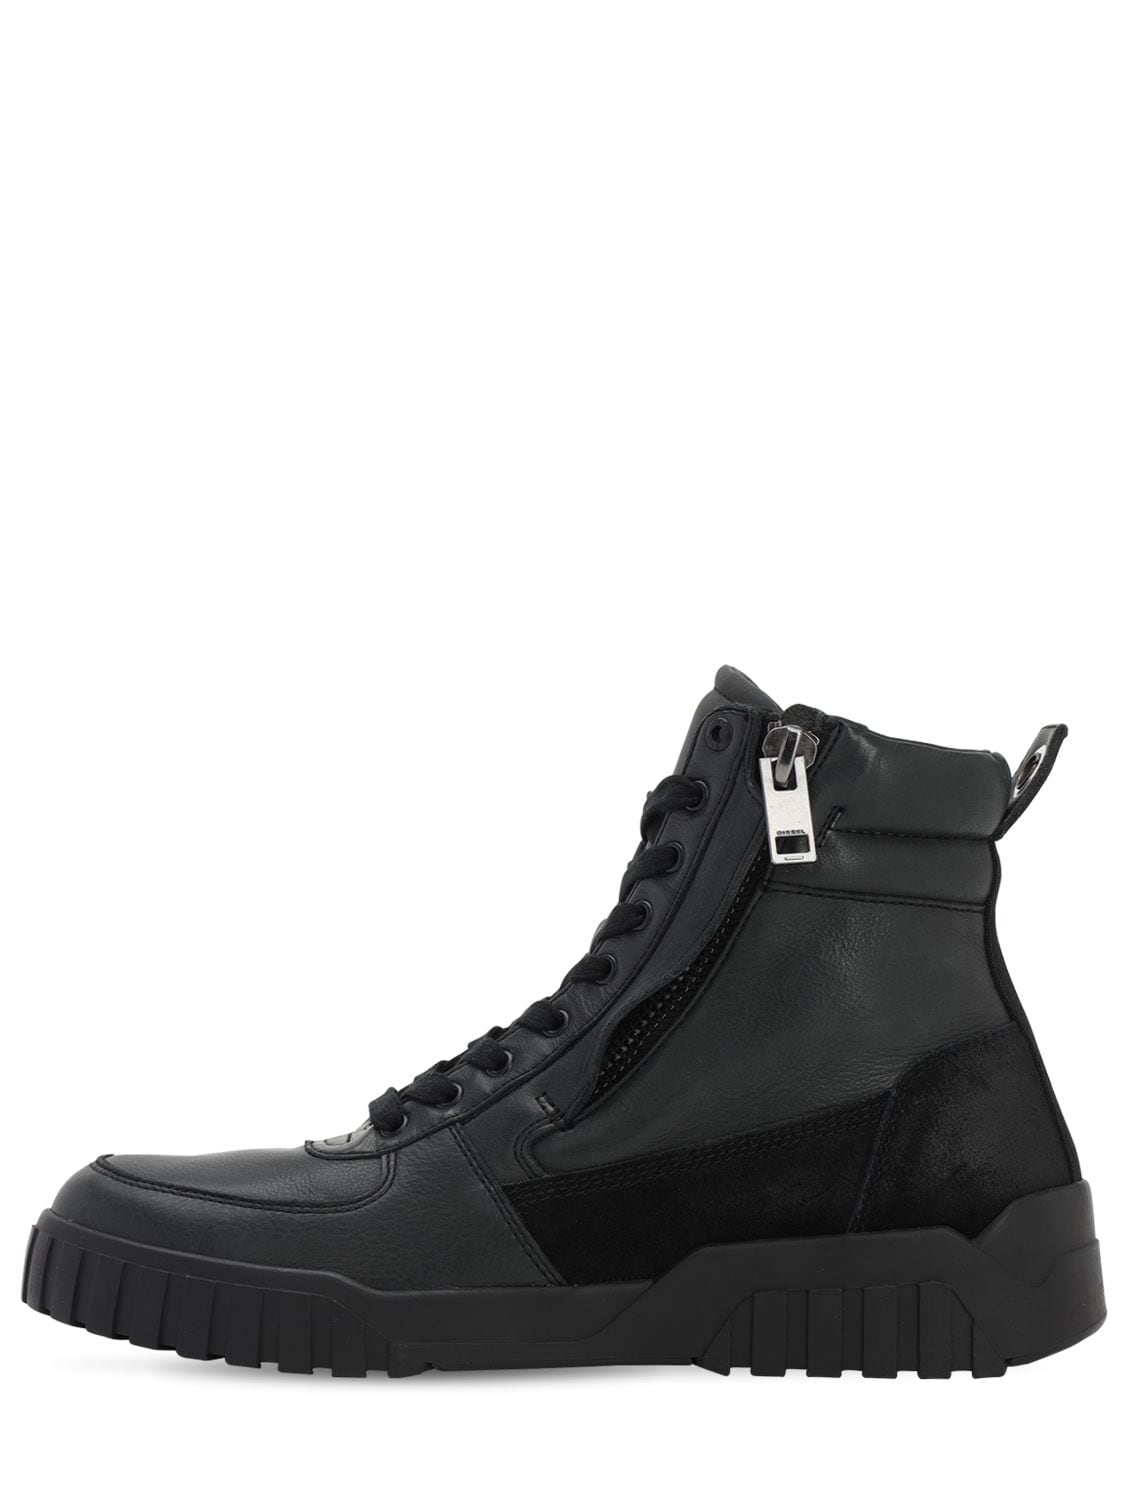 Diesel Leather & Suede High Top Zip Sneakers In Black | ModeSens